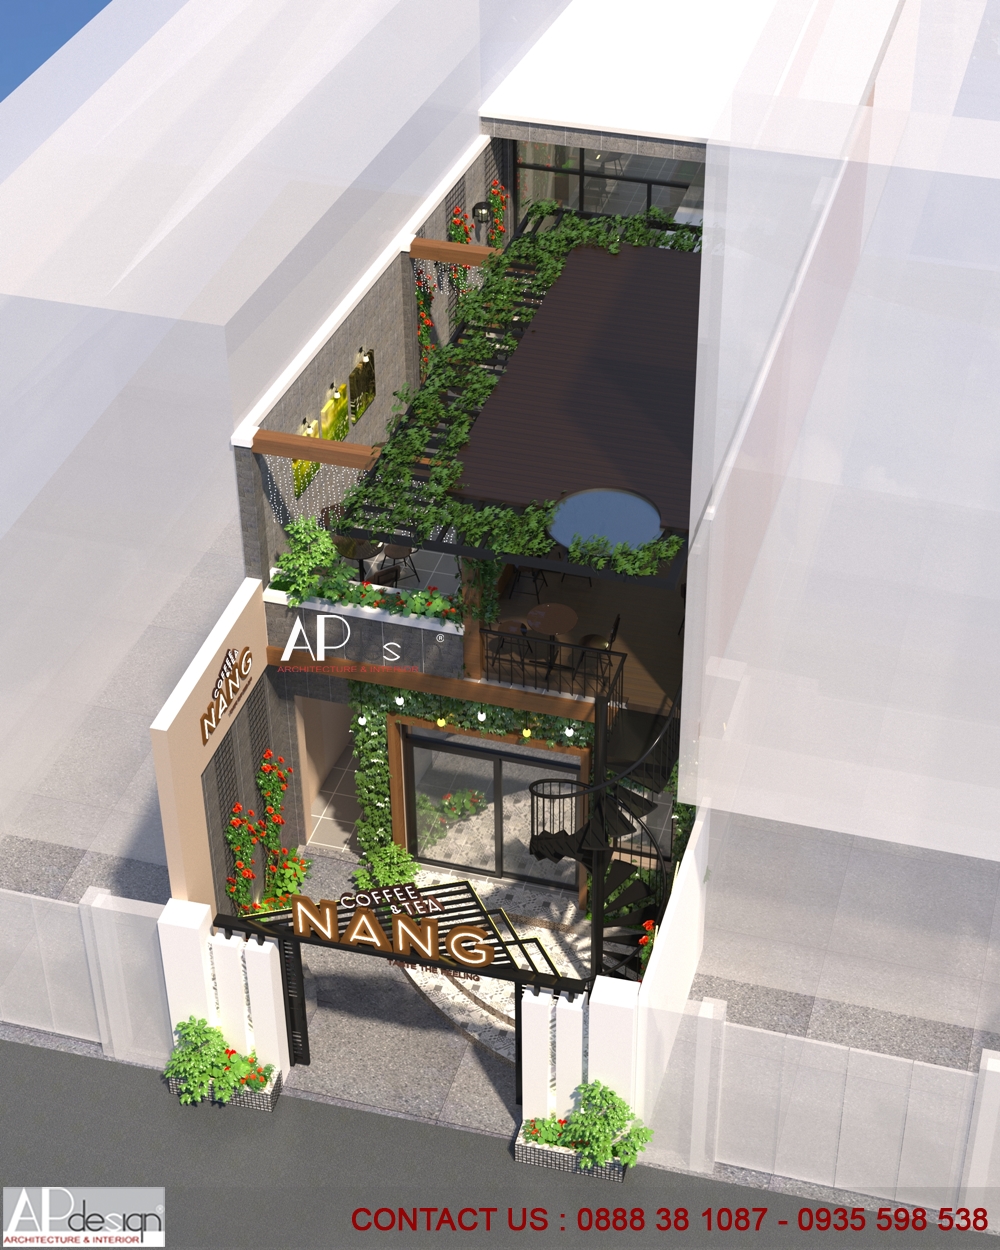 1-Thiet ke quan cafe ngang 5m Nang Cafe (15) - Thiết kế nhà đẹp ...